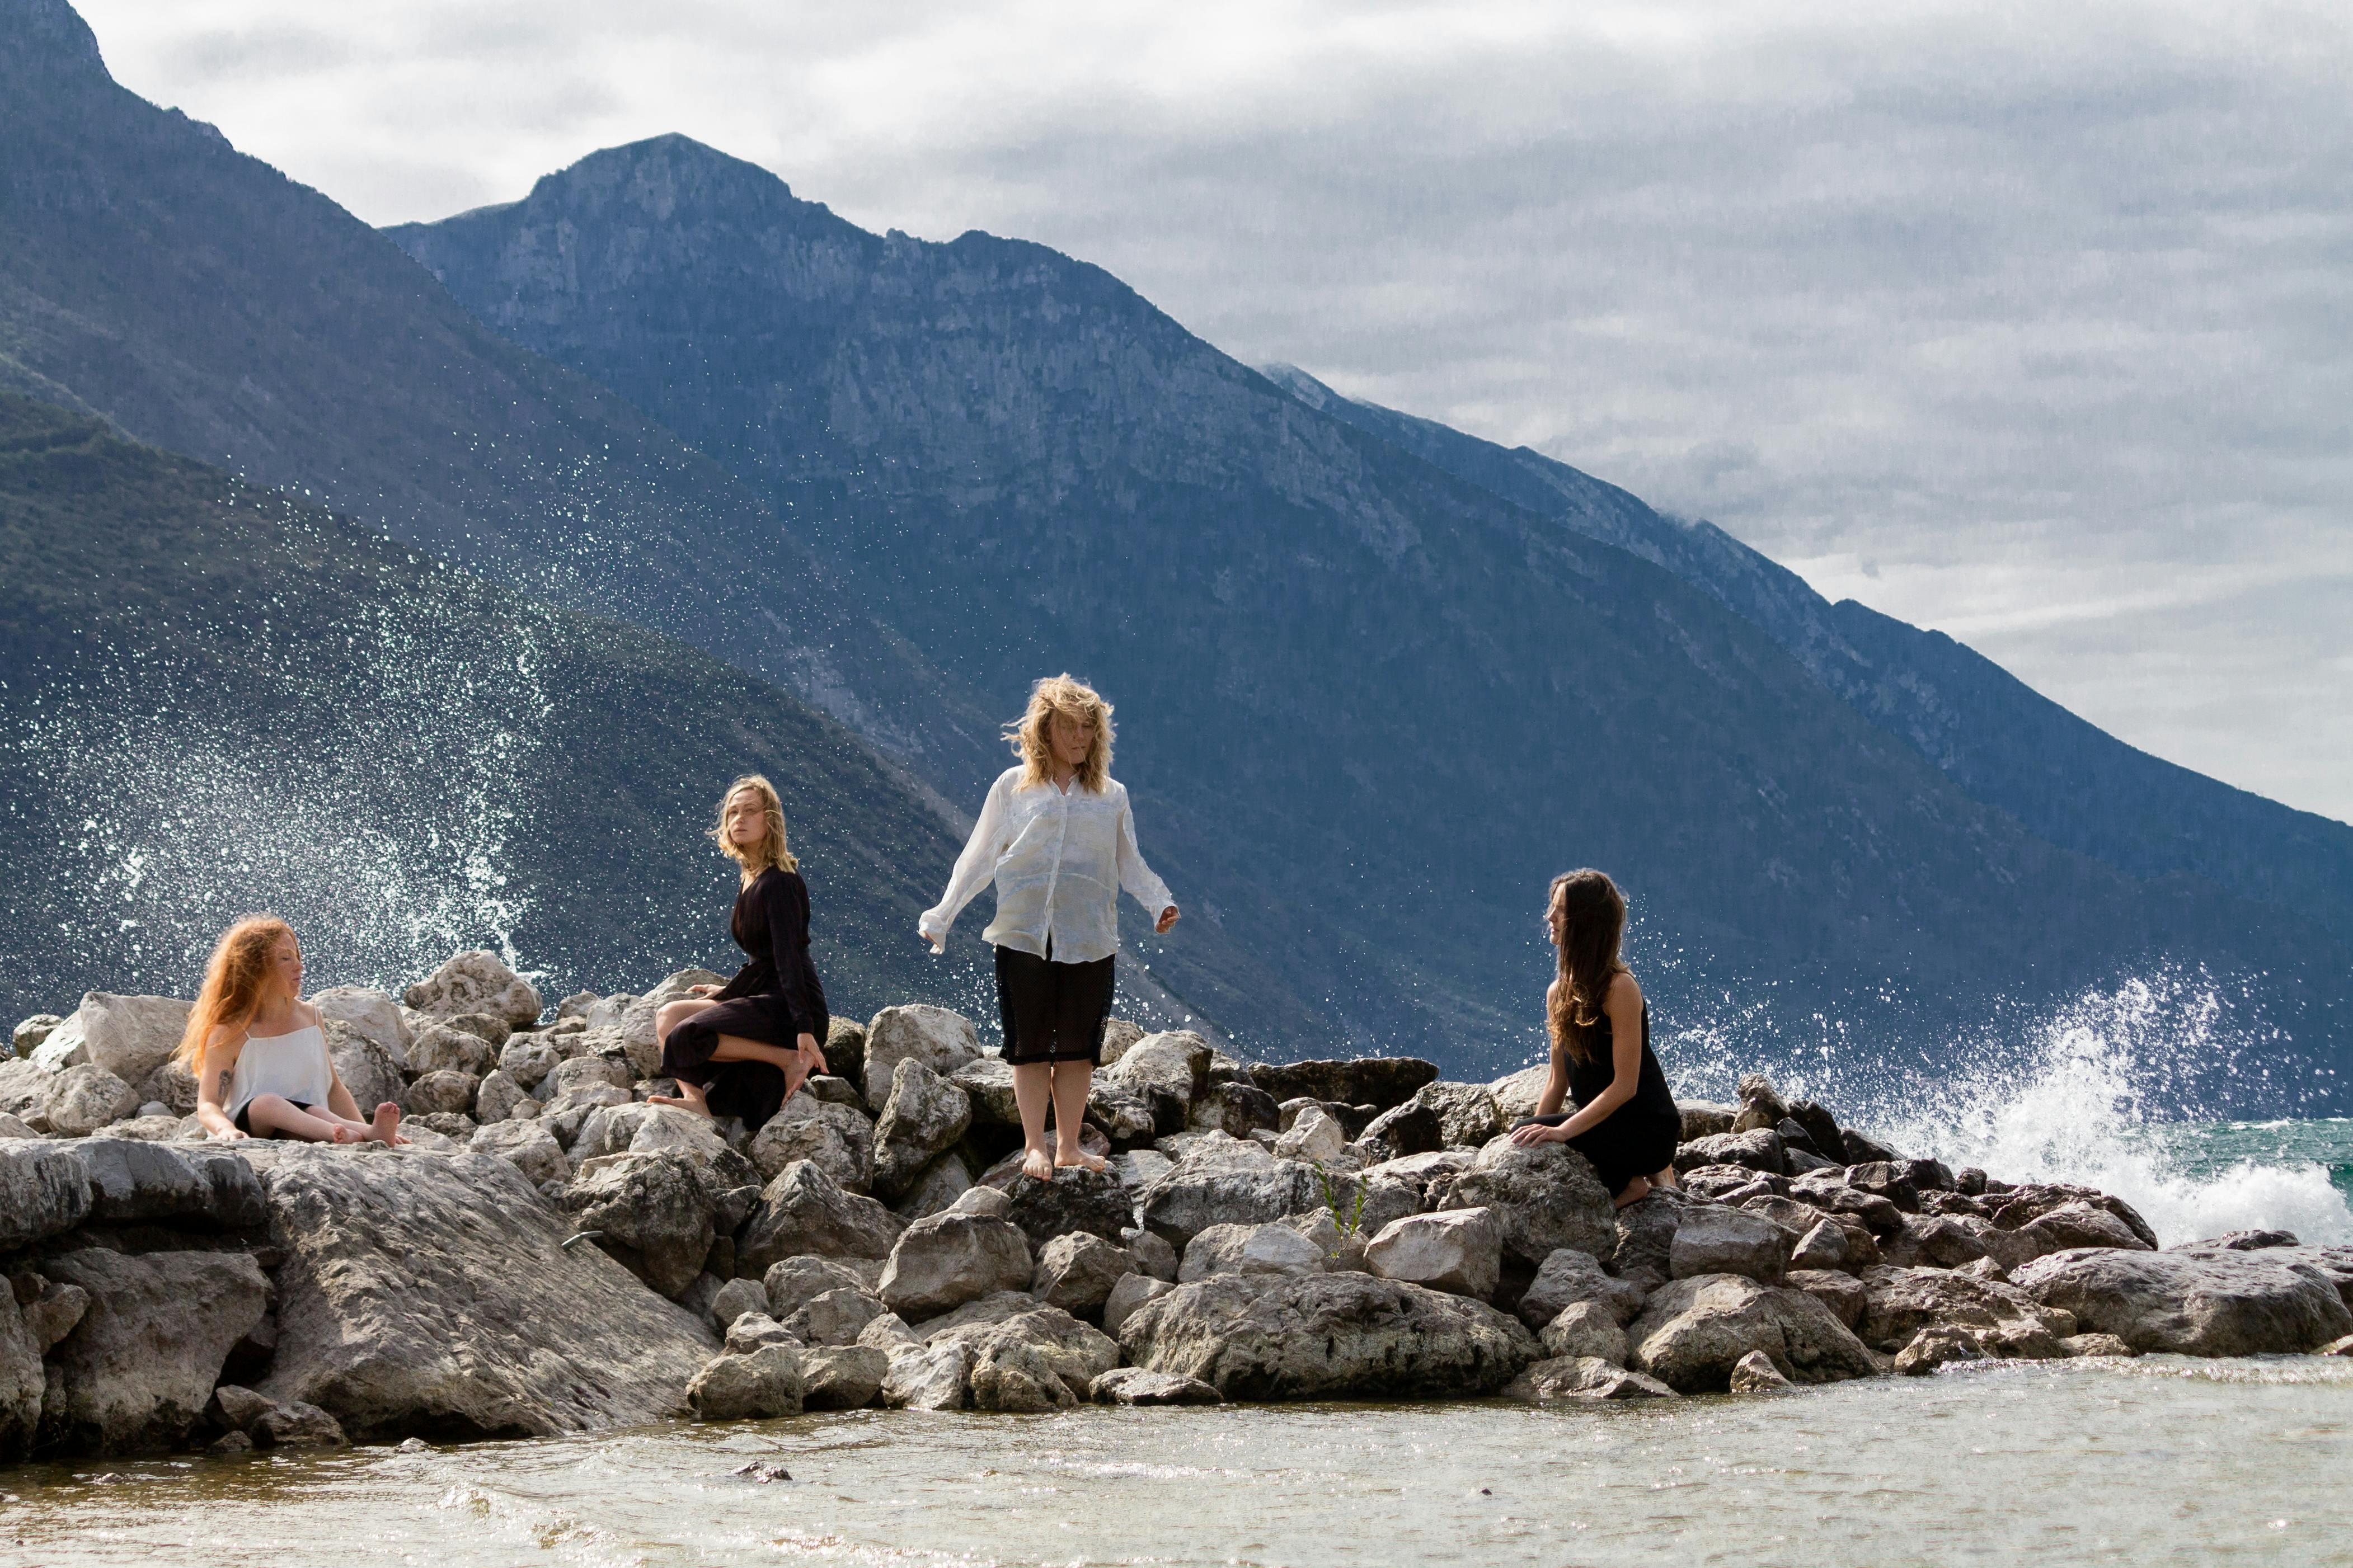 Si vedono delle rocce su una superficie d'acqua; sullo sfondo le montagne.  Quattro donne sono in piedi o sedute sulle rocce, ferme in attesa. Spruzzi d'acqua ne incorniciano le figure.